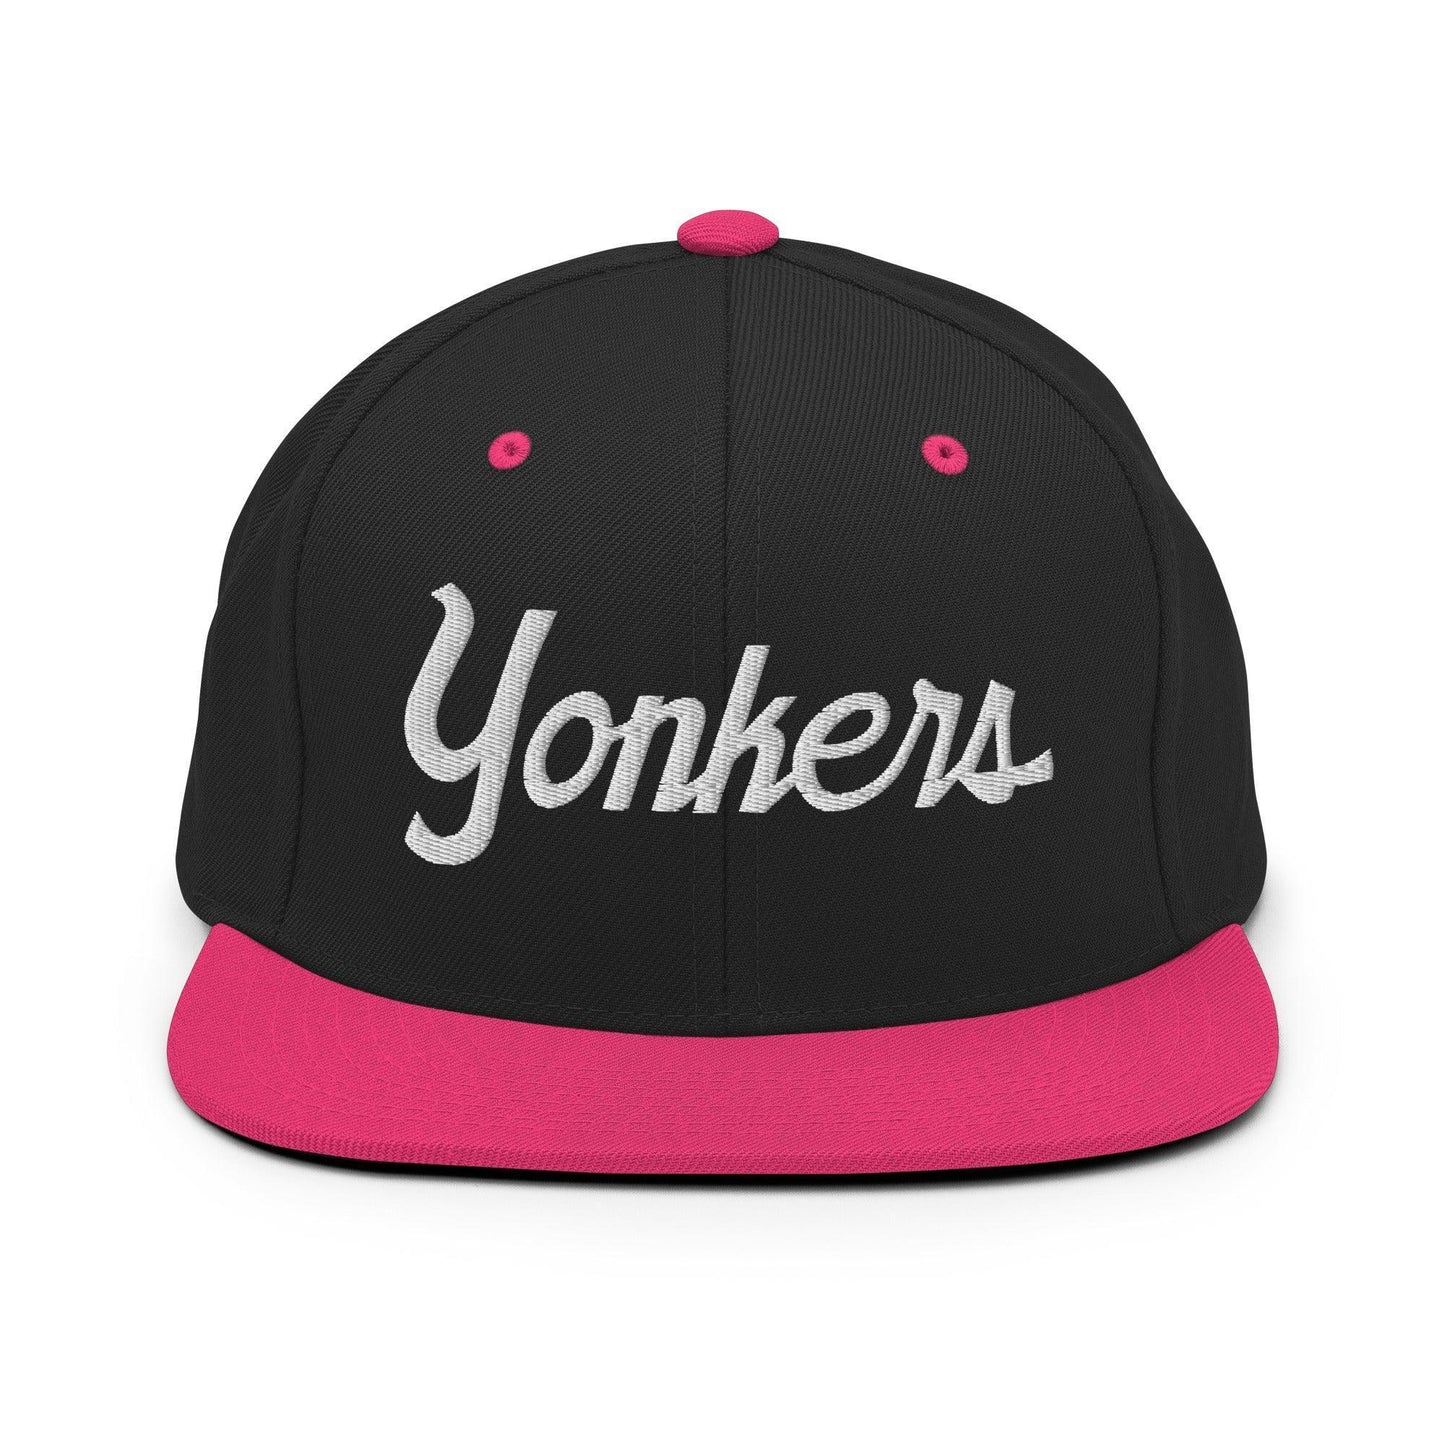 Yonkers Script Snapback Hat Black Neon Pink